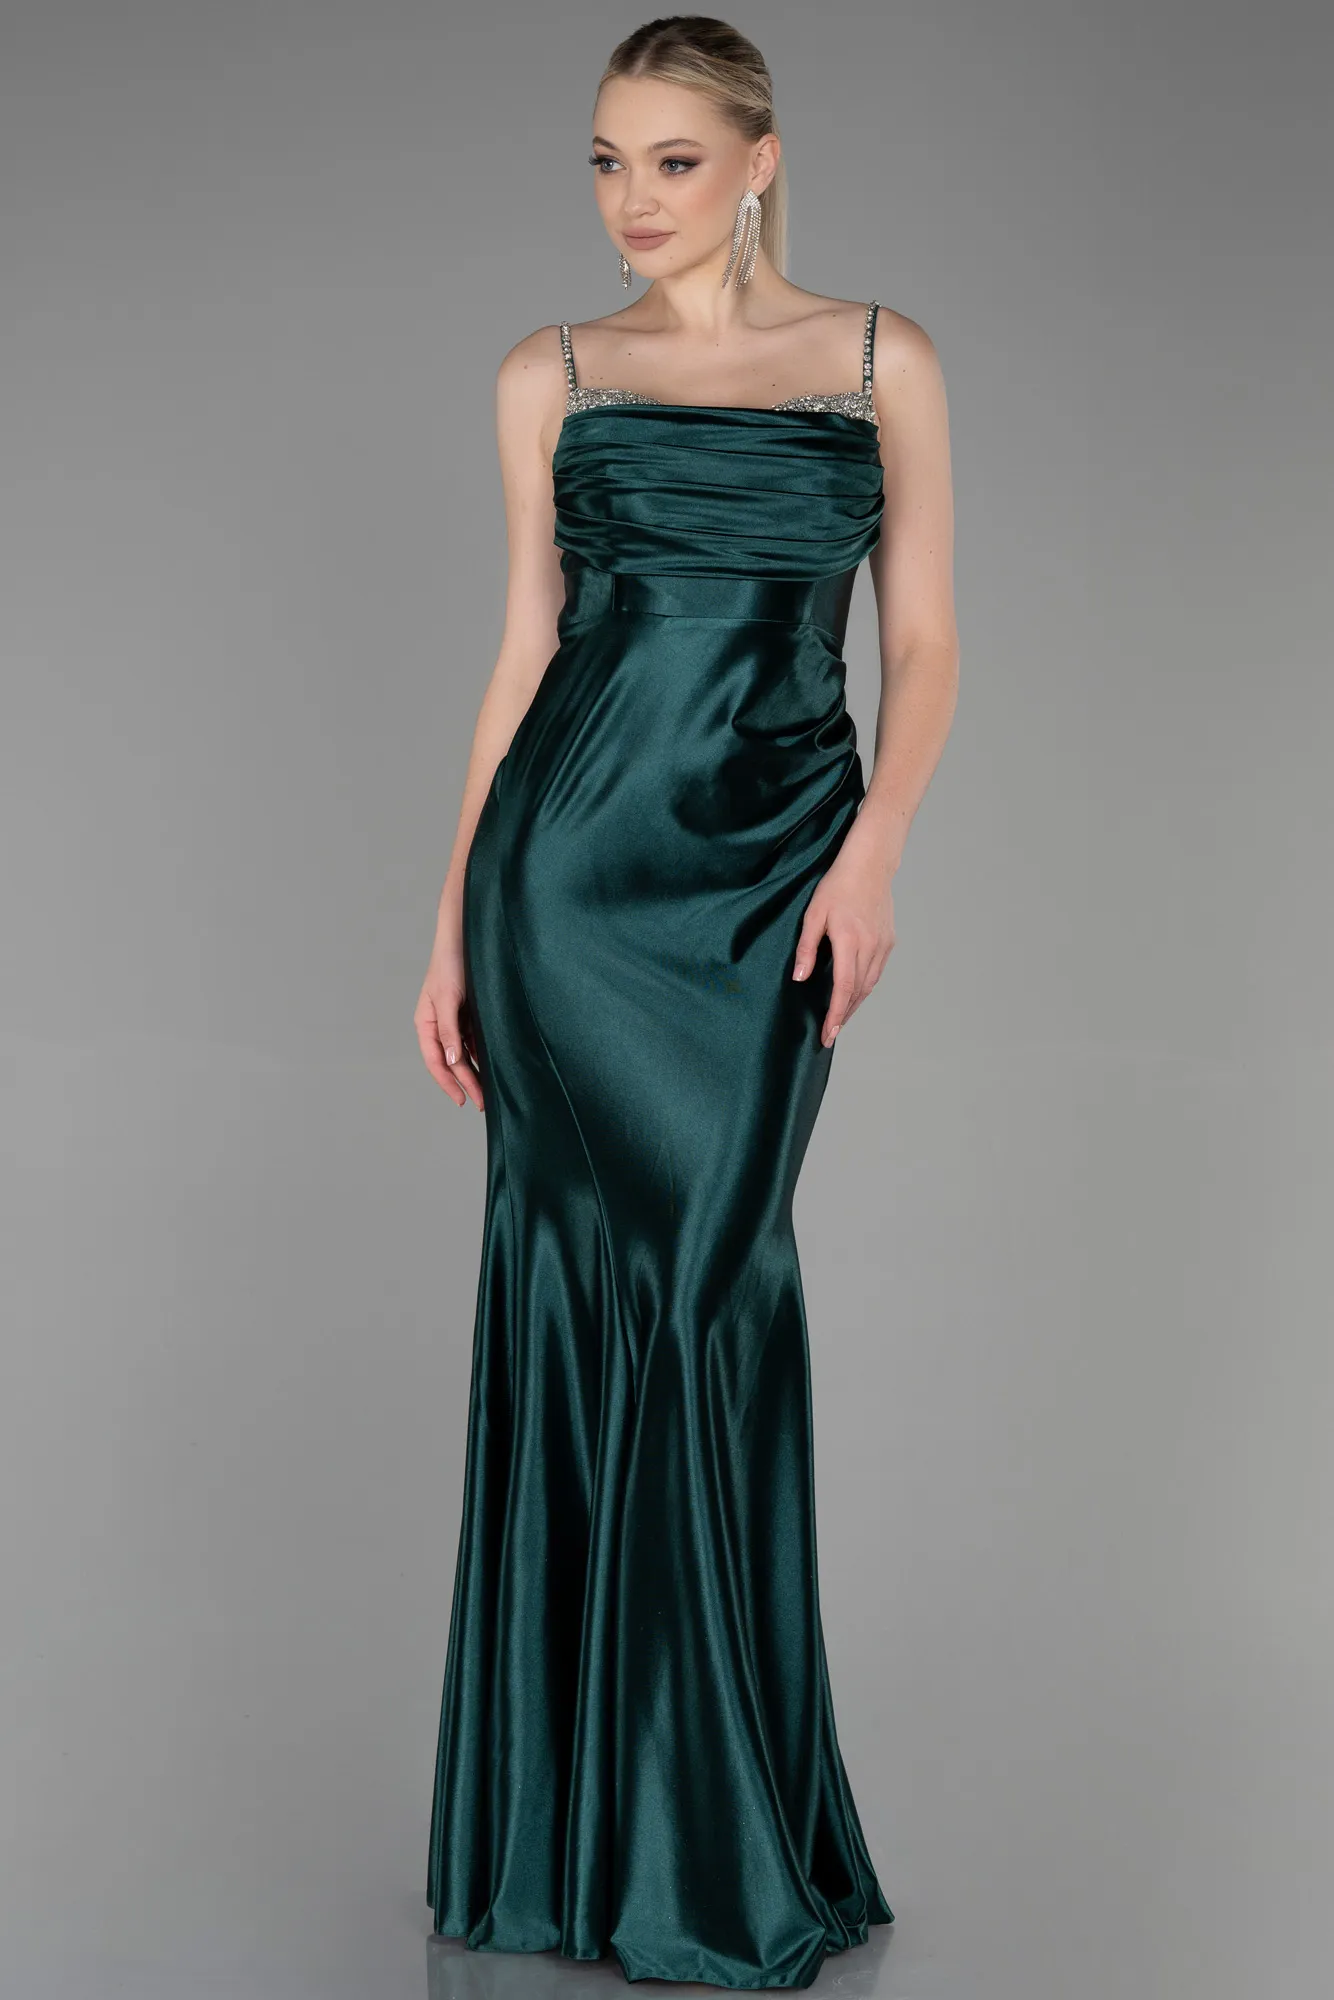 Emerald Green-Long Evening Dress ABU3334